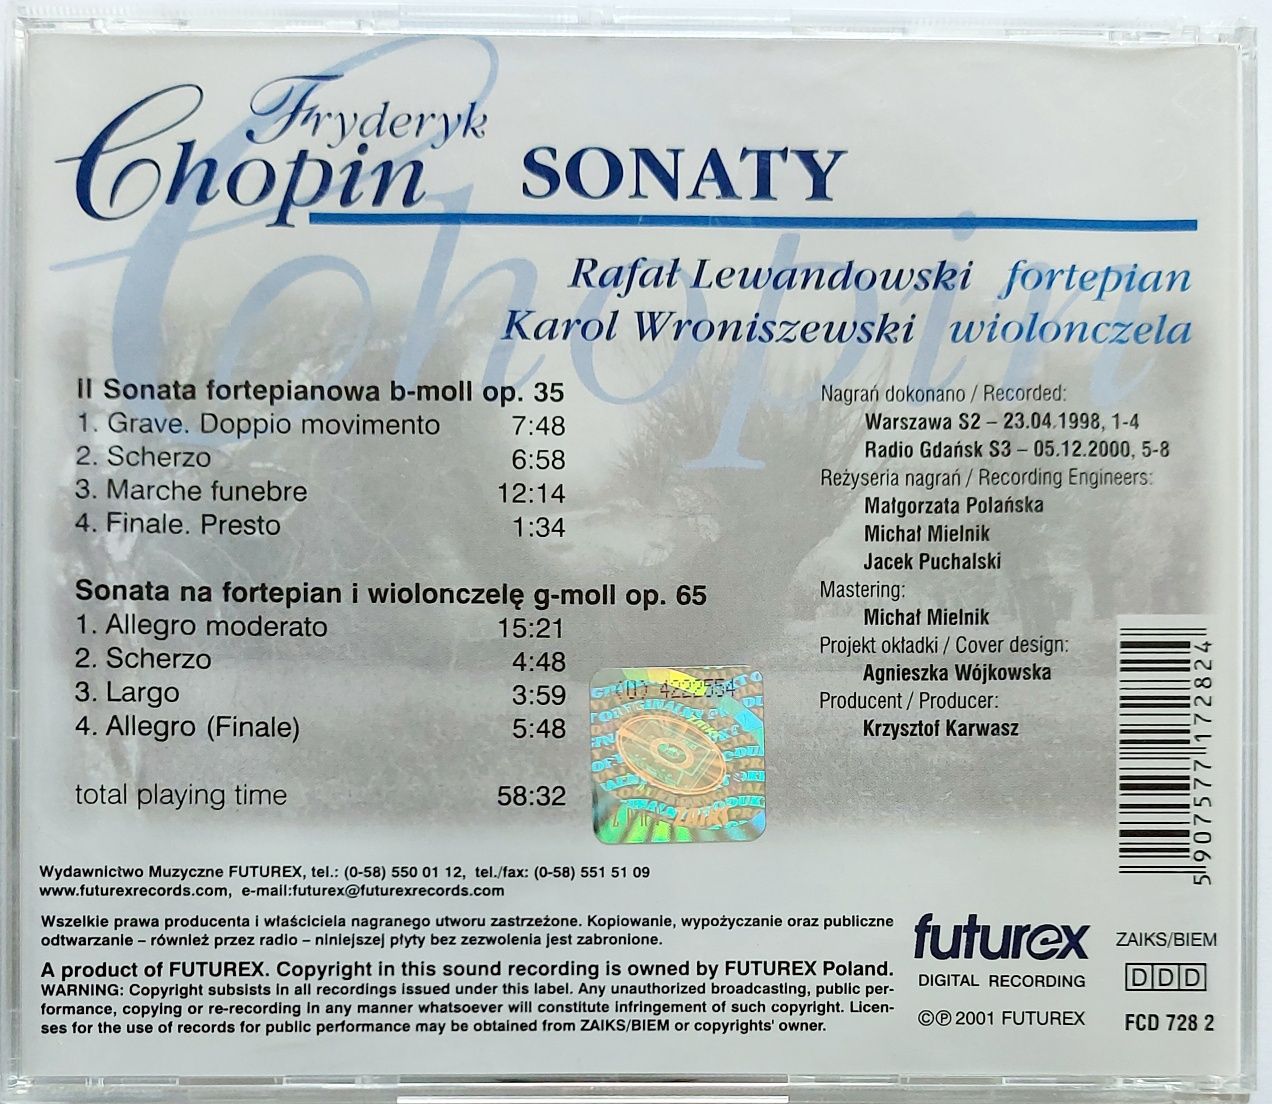 Klasyczne Pejzaże Fryderyk Chopin Sonaty Rafał Lewandowski 2009r